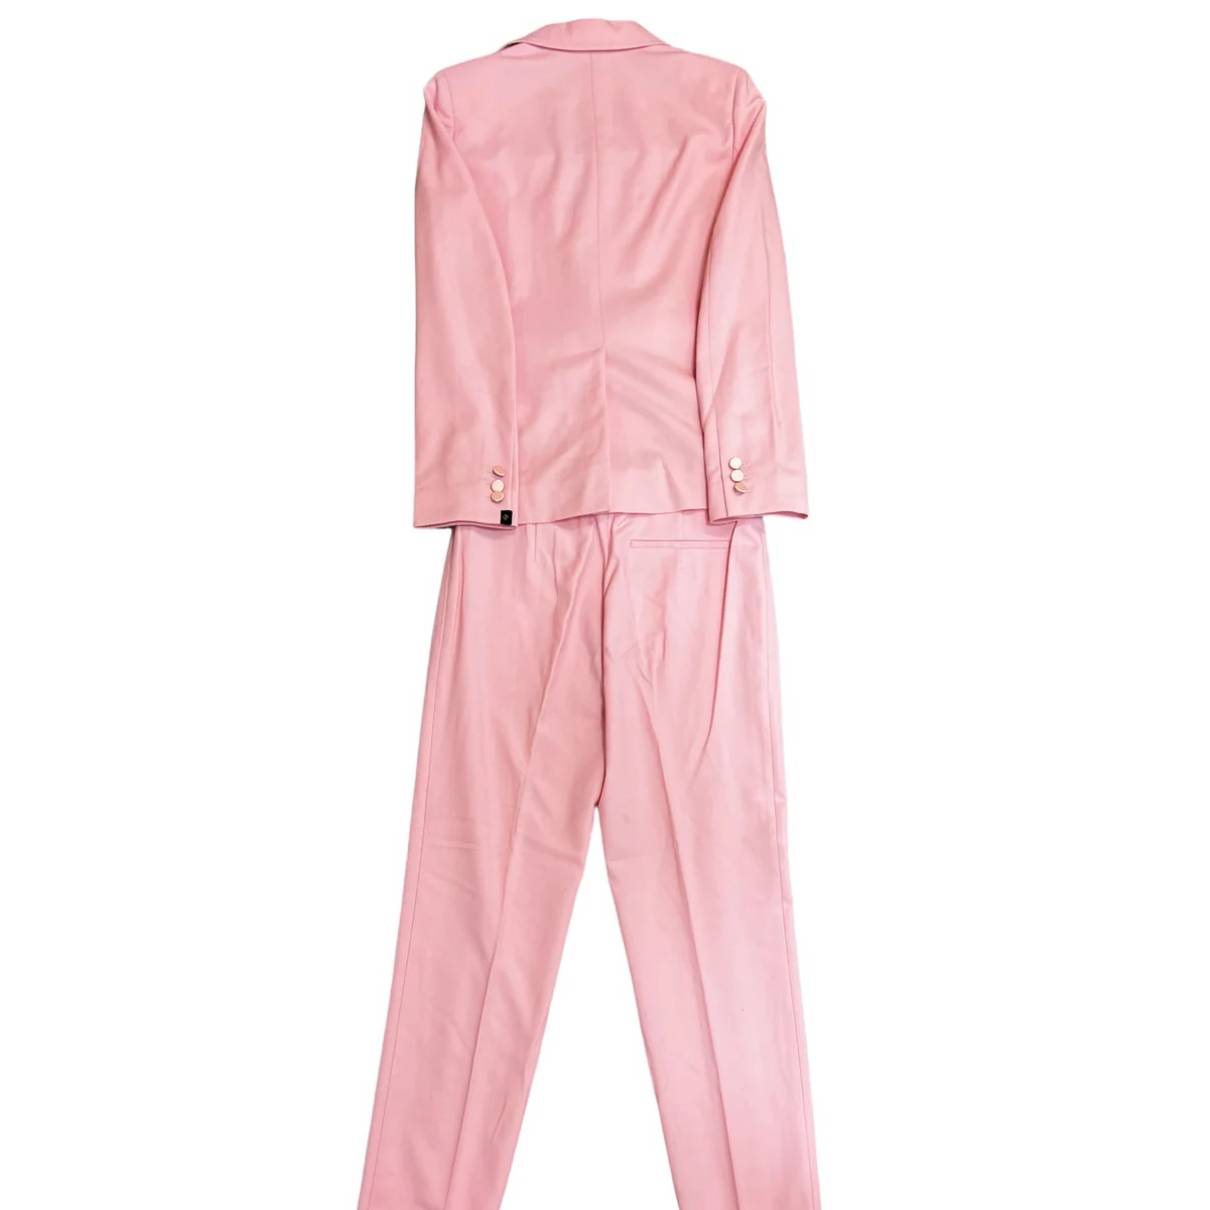 louis vuitton pajamas pink